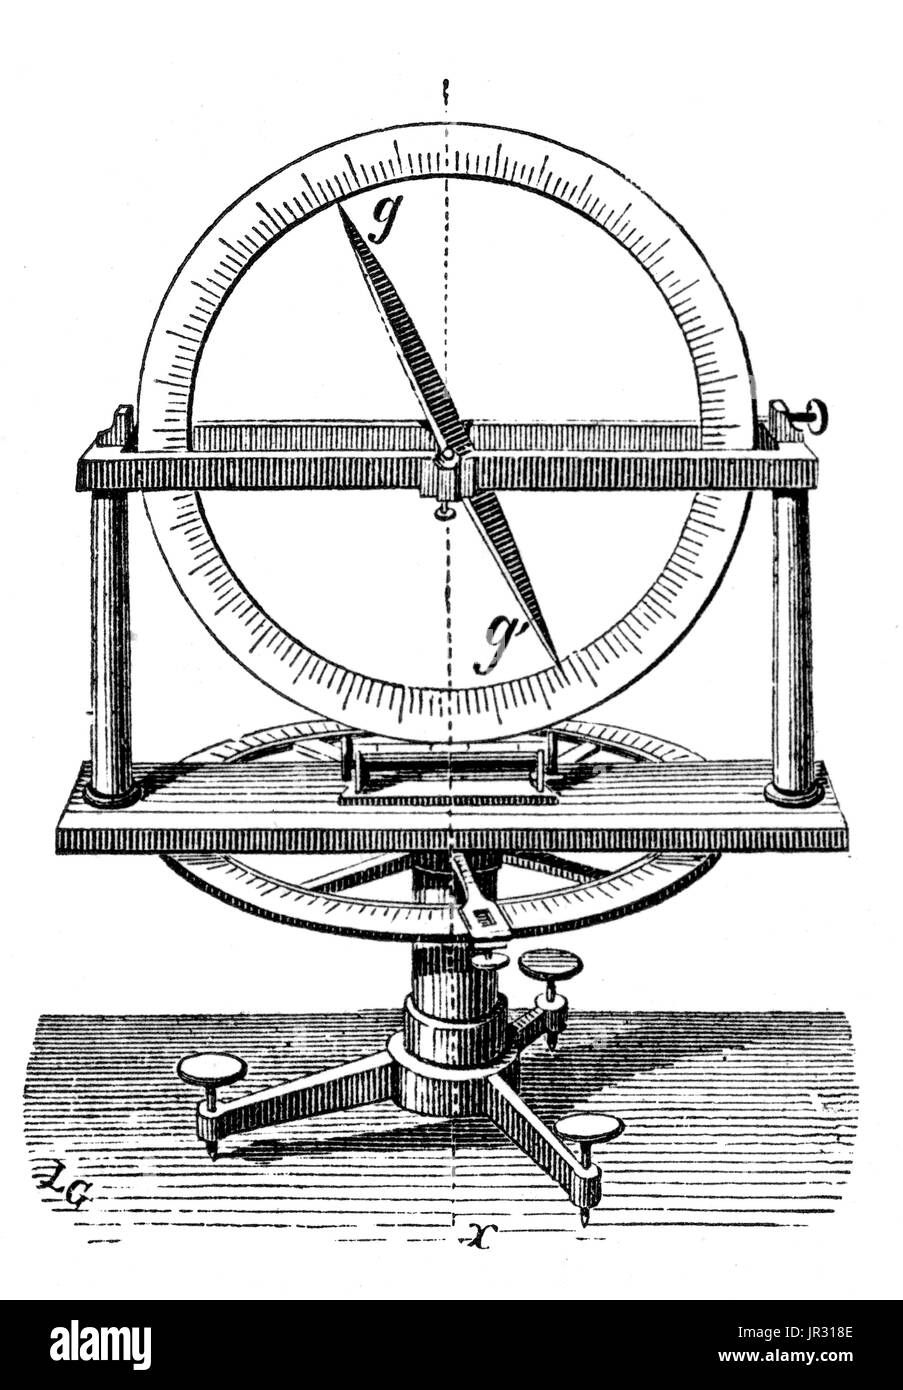 Un goniomètre est un instrument qui mesure un angle ou permet à un objet d'être tourné à un angle précis. En cristallographie, goniomètres sont utilisés pour mesurer les angles entre les faces du cristal. Ils sont également utilisés dans la diffraction des rayons X pour faire pivoter les échantillons. Les enquêtes du physicien révolutionnaire Max von Laue et collègues dans la structure atomique des cristaux en 1912 concernait un goniomètre. Banque D'Images